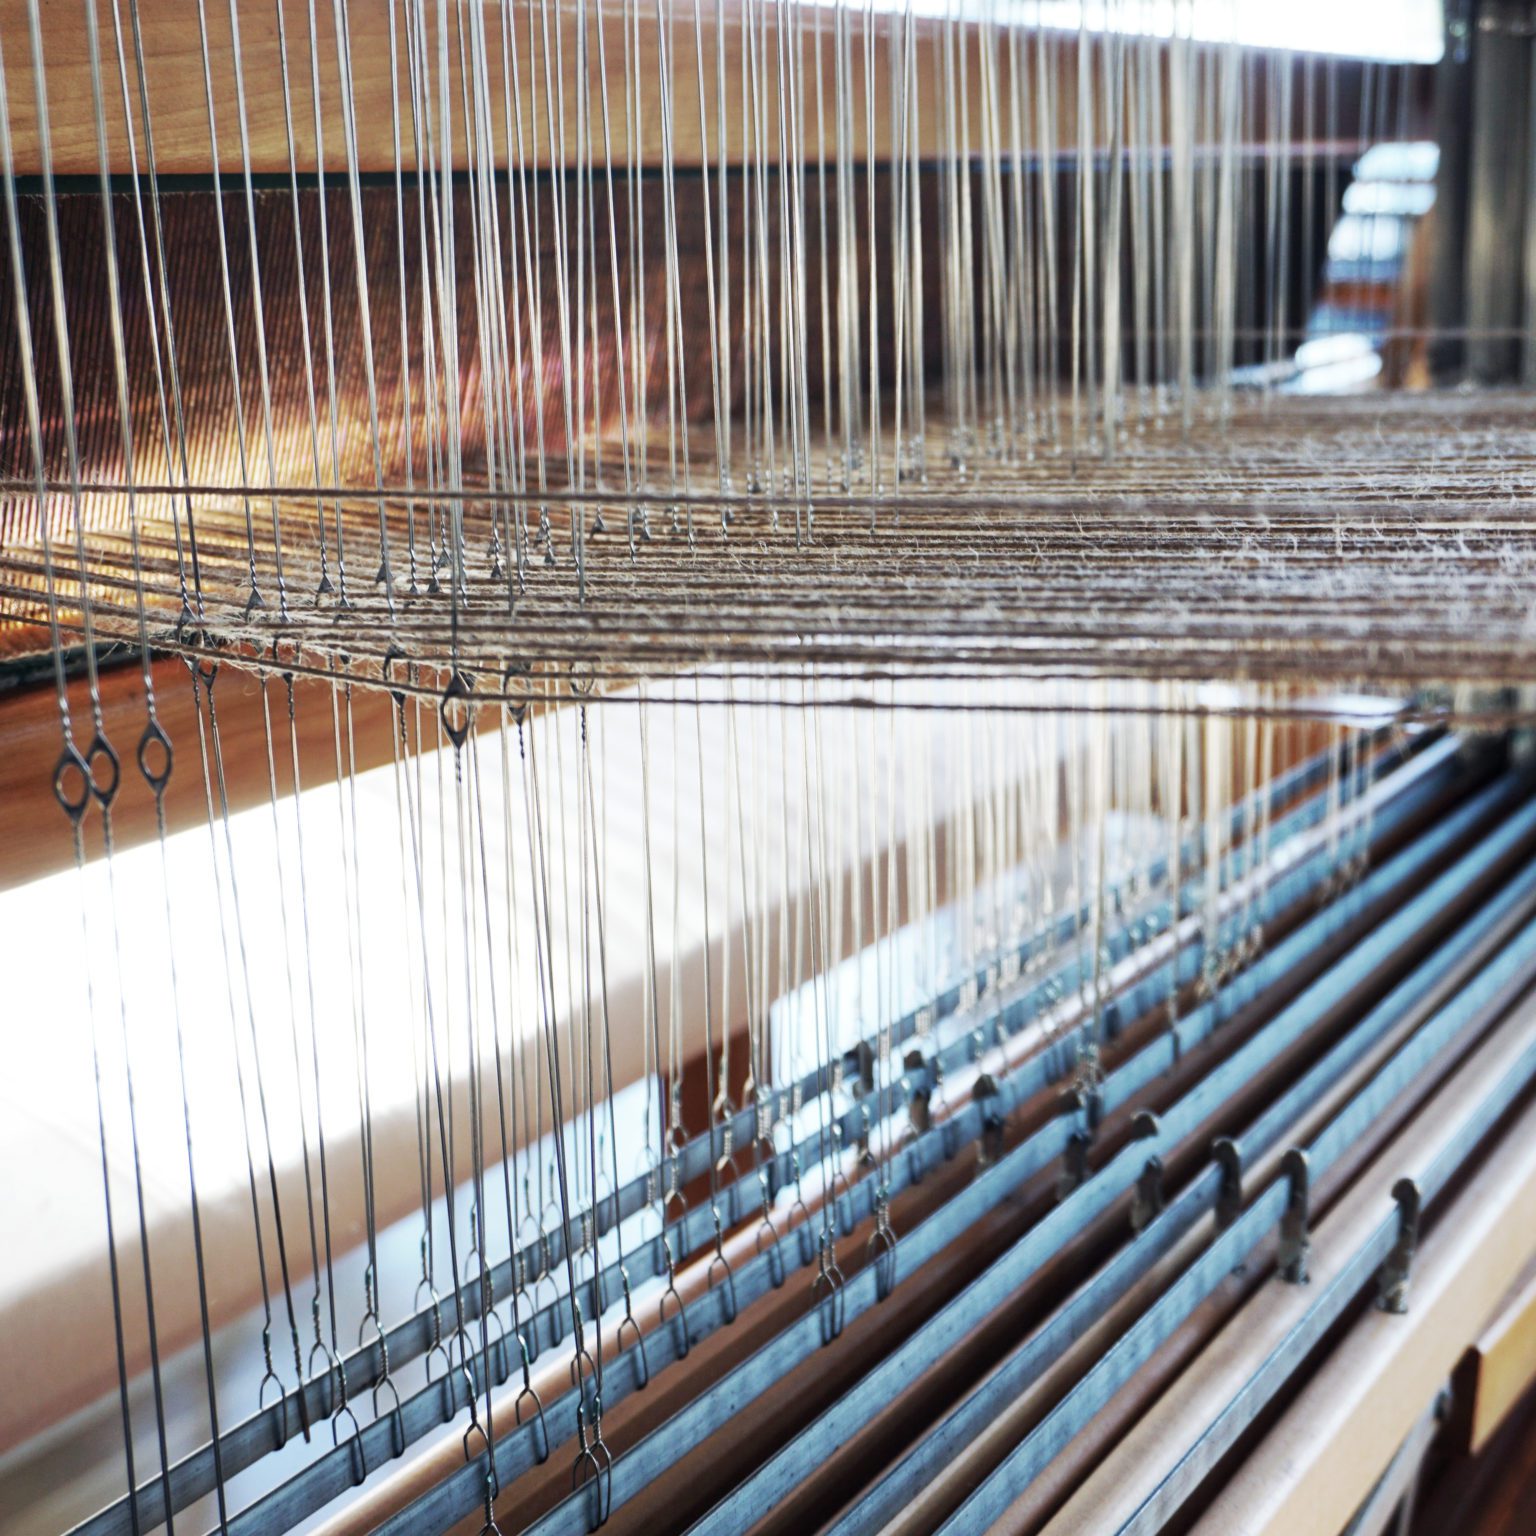 Name Drafting Your Weaving – Jansen Art Center